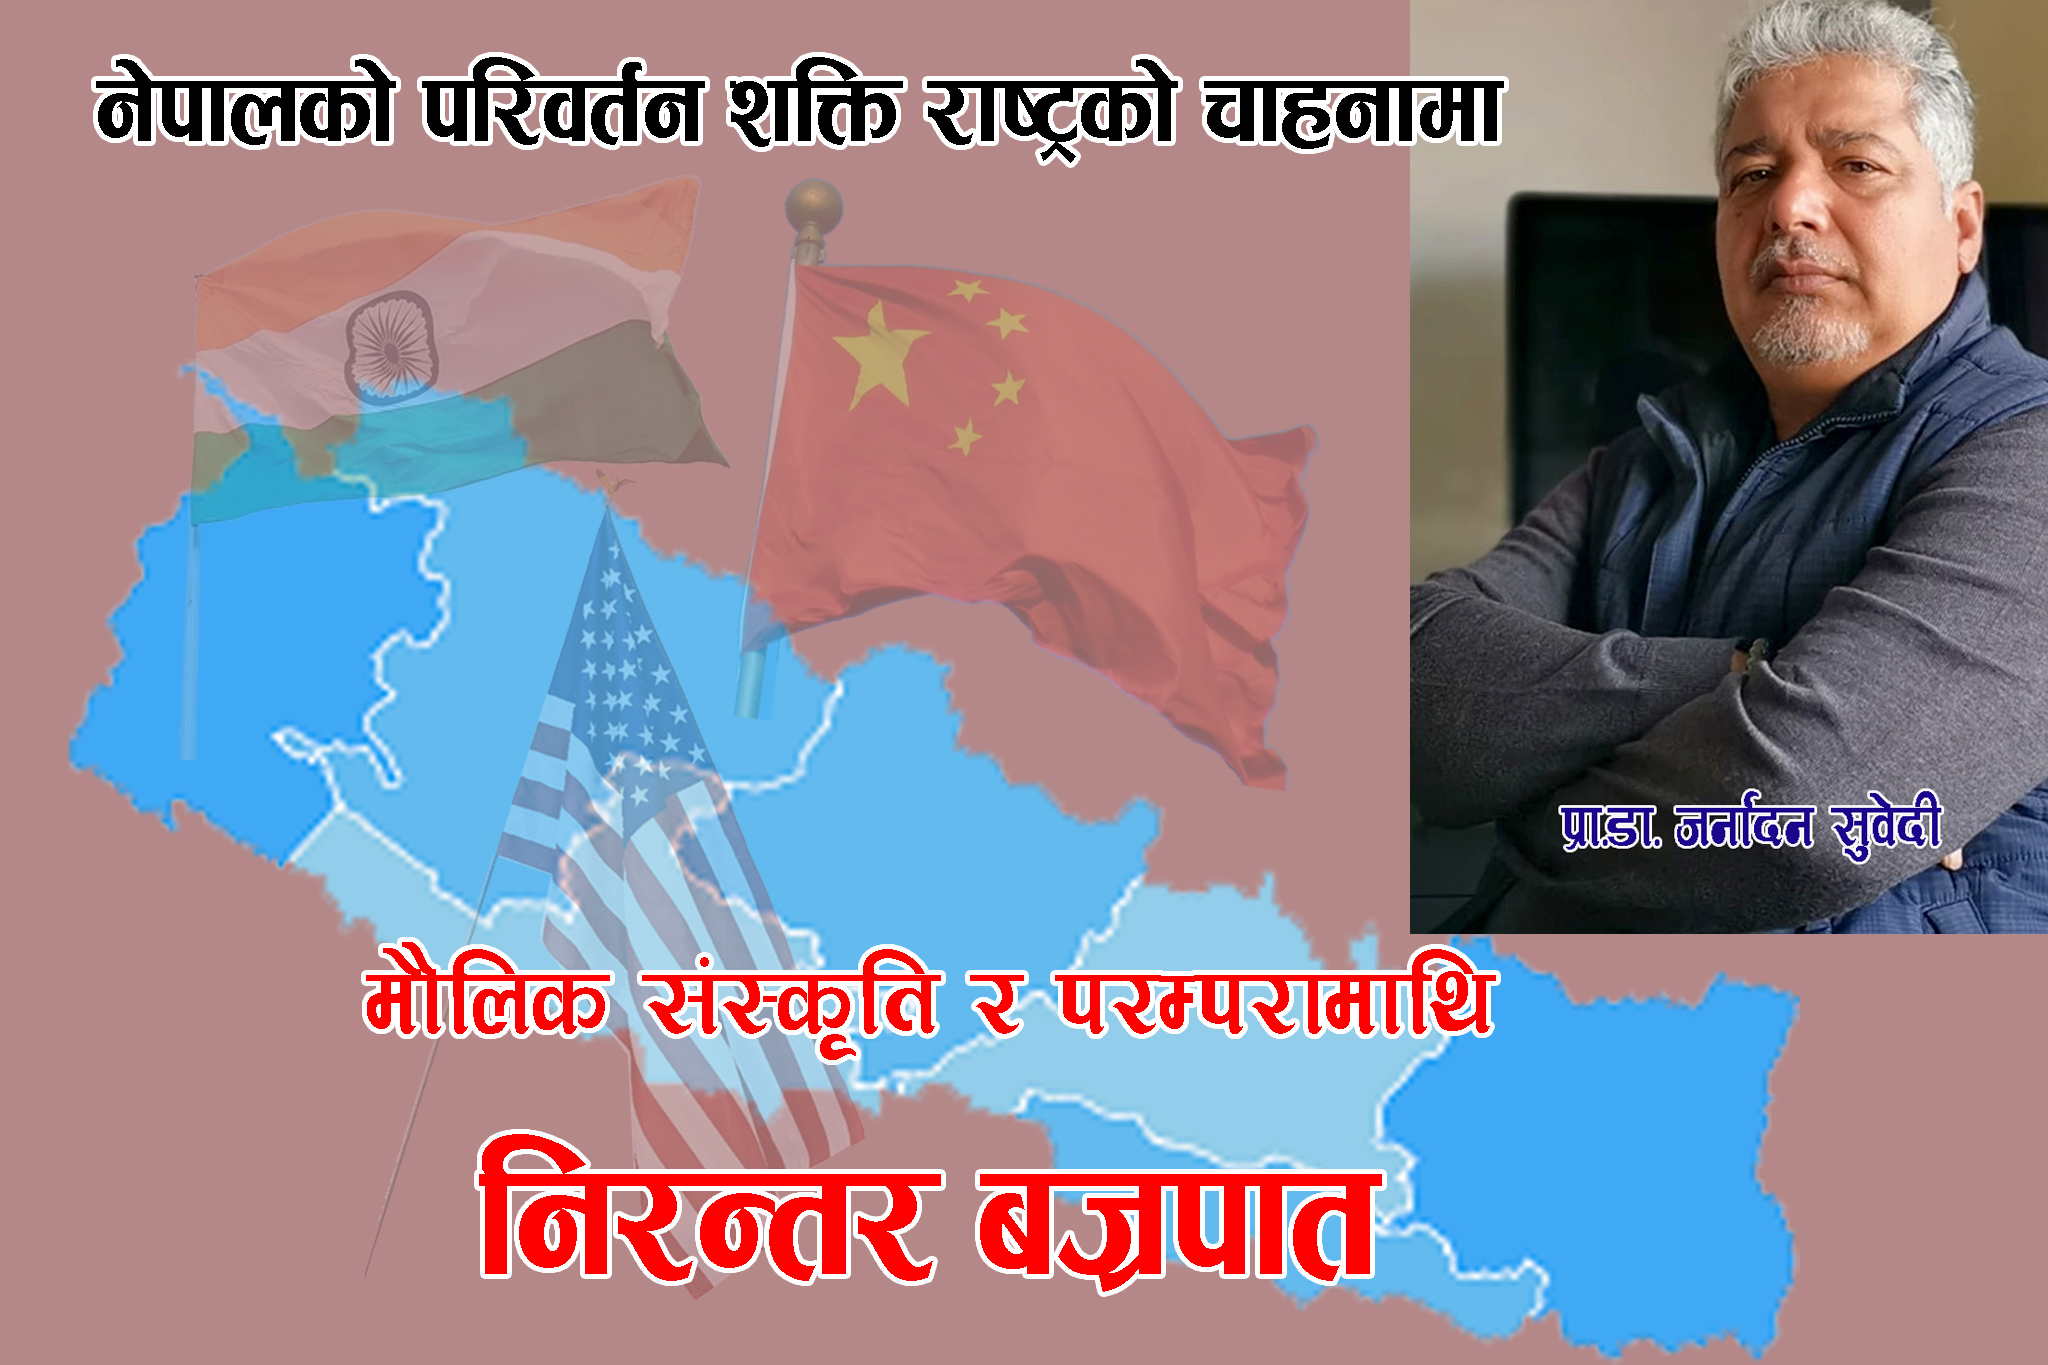 बाह्य शक्तिको क्रिडास्थल बन्दै छ नेपाल